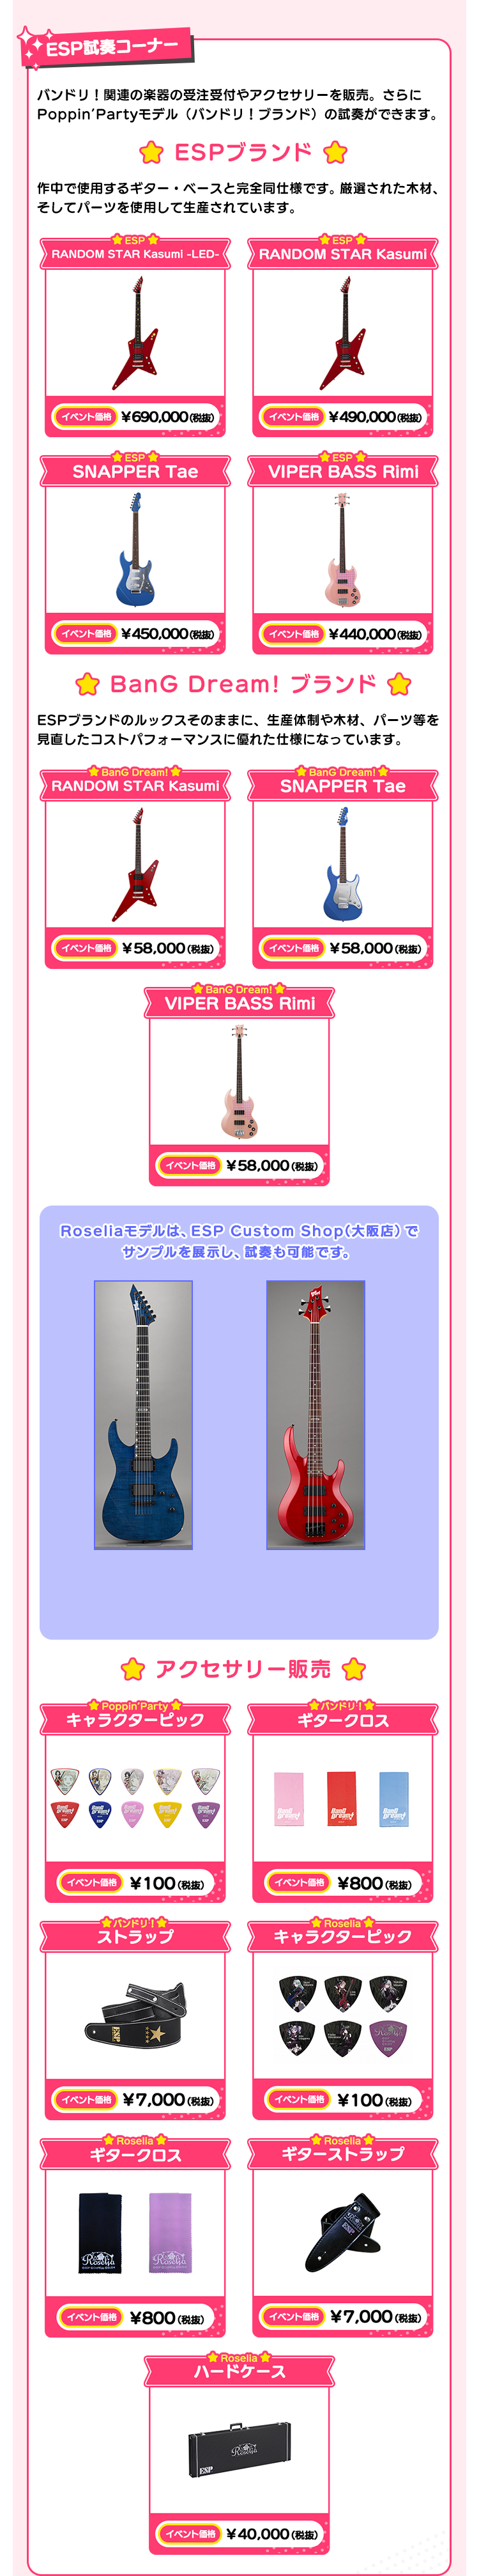 ESP試奏コーナー バンドリ！関連の楽器の受注受付や、アクセサリーを販売。さらにPoppin’Partyモデルの試奏ができます！ ESPブランド 作中で使用するギター・ベースと完全同仕様です。厳選された木材、そしてパーツを使用して生産されています。 ESP RANDOM STAR Kasumi -LED- イベント価格 ￥690,000(税抜） ESP RANDOM STAR Kasumi イベント価格 ￥490,000(税抜） ESP SNAPPER Tae イベント価格 ￥450,000(税抜） ESP VIPER BASS Rimi イベント価格 ￥440,000(税抜） BanG Dream! ブランド ESPブランドのルックスそのままに、生産体制や木材、パーツ等を見直したコストパフォーマンスに優れた仕様になっています。 BanG Dream! RANDOM STAR Kasumi イベント価格 ￥58,000(税抜） BanG Dream! SNAPPER Tae イベント価格 ￥58,000(税抜） BanG Dream! VIPER BASS Rimi イベント価格 ￥58,000(税抜） Roseliaモデルは、大阪 Custom Shopでサンプルを展示します。 アクセサリー販売 Poppin’Party キャラクターピック イベント価格 ￥100（税抜） バンドリ！ ギタークロス イベント価格 ￥800（税抜） バンドリ！ ストラップ イベント価格 ￥7,000(税抜） ロゼリア キャラクターピック イベント価格 ￥100（税抜） ロゼリア ギタークロス イベント価格 ￥800（税抜） ロゼリア ギターストラップ イベント価格 ￥7,000(税抜） ロゼリア ハードケース イベント価格 ￥40,000(税抜）